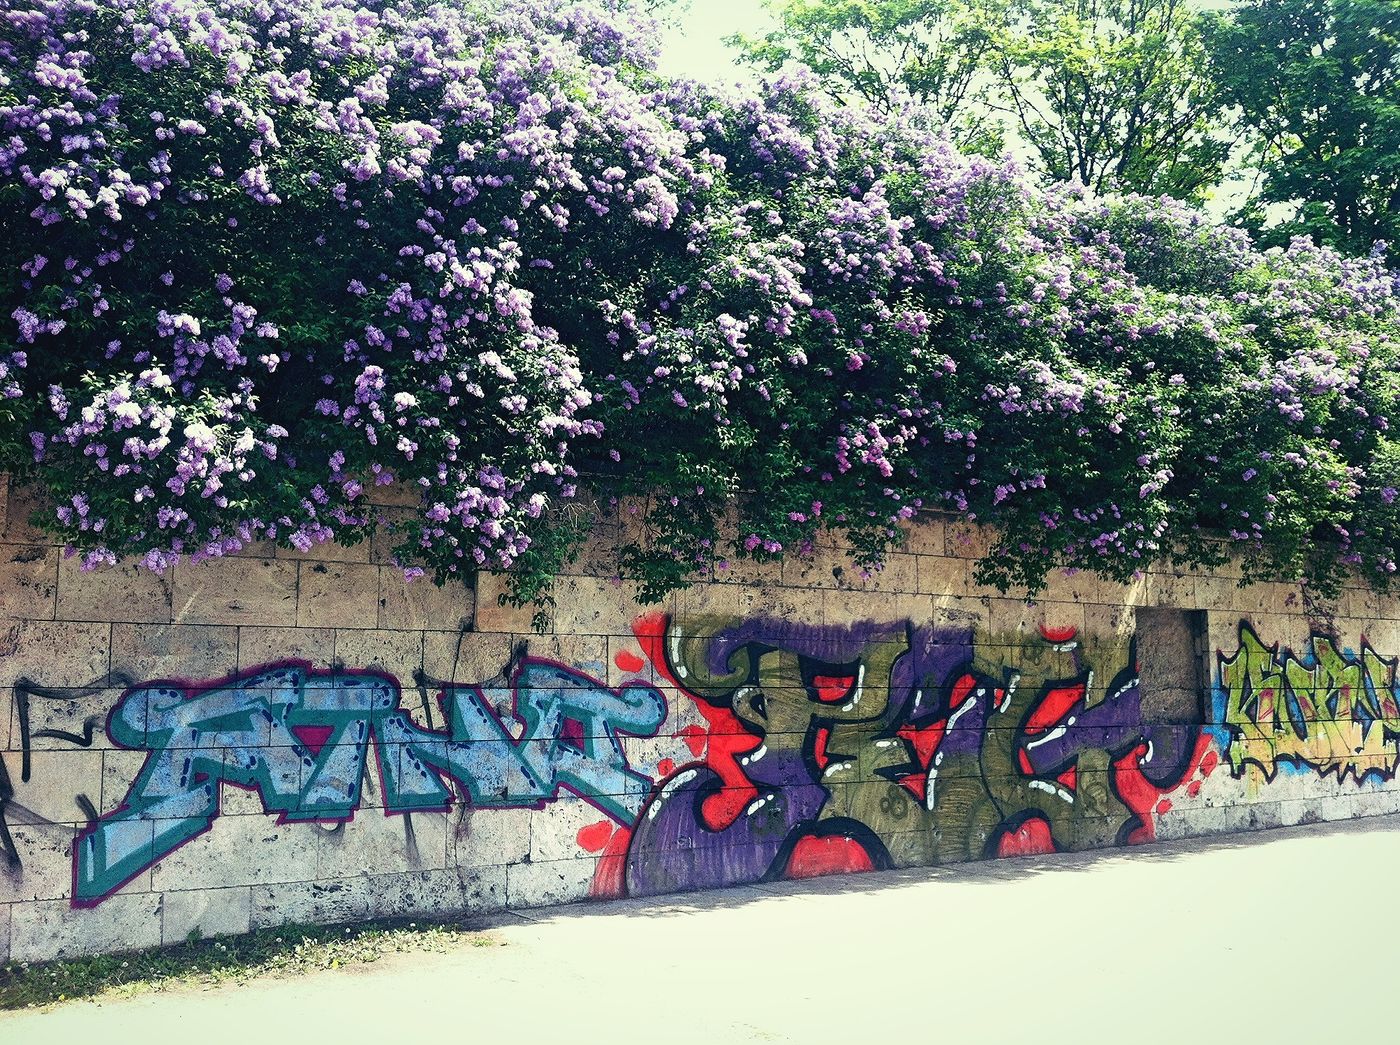 nature meets street art